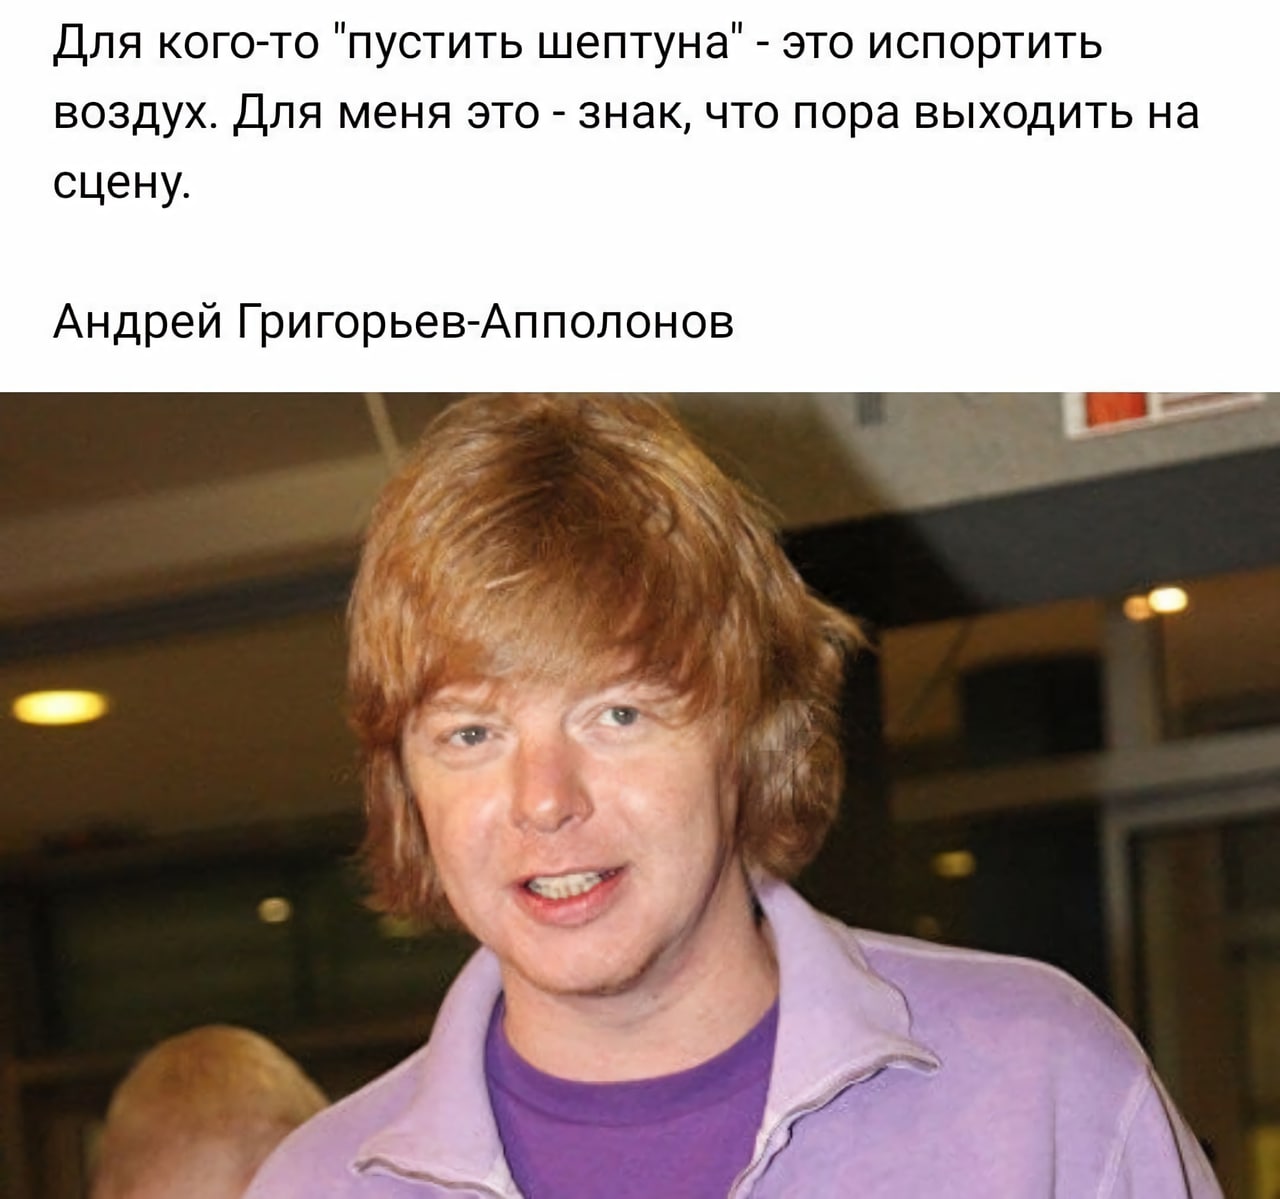 Андрей Григорьев-Аполлонов